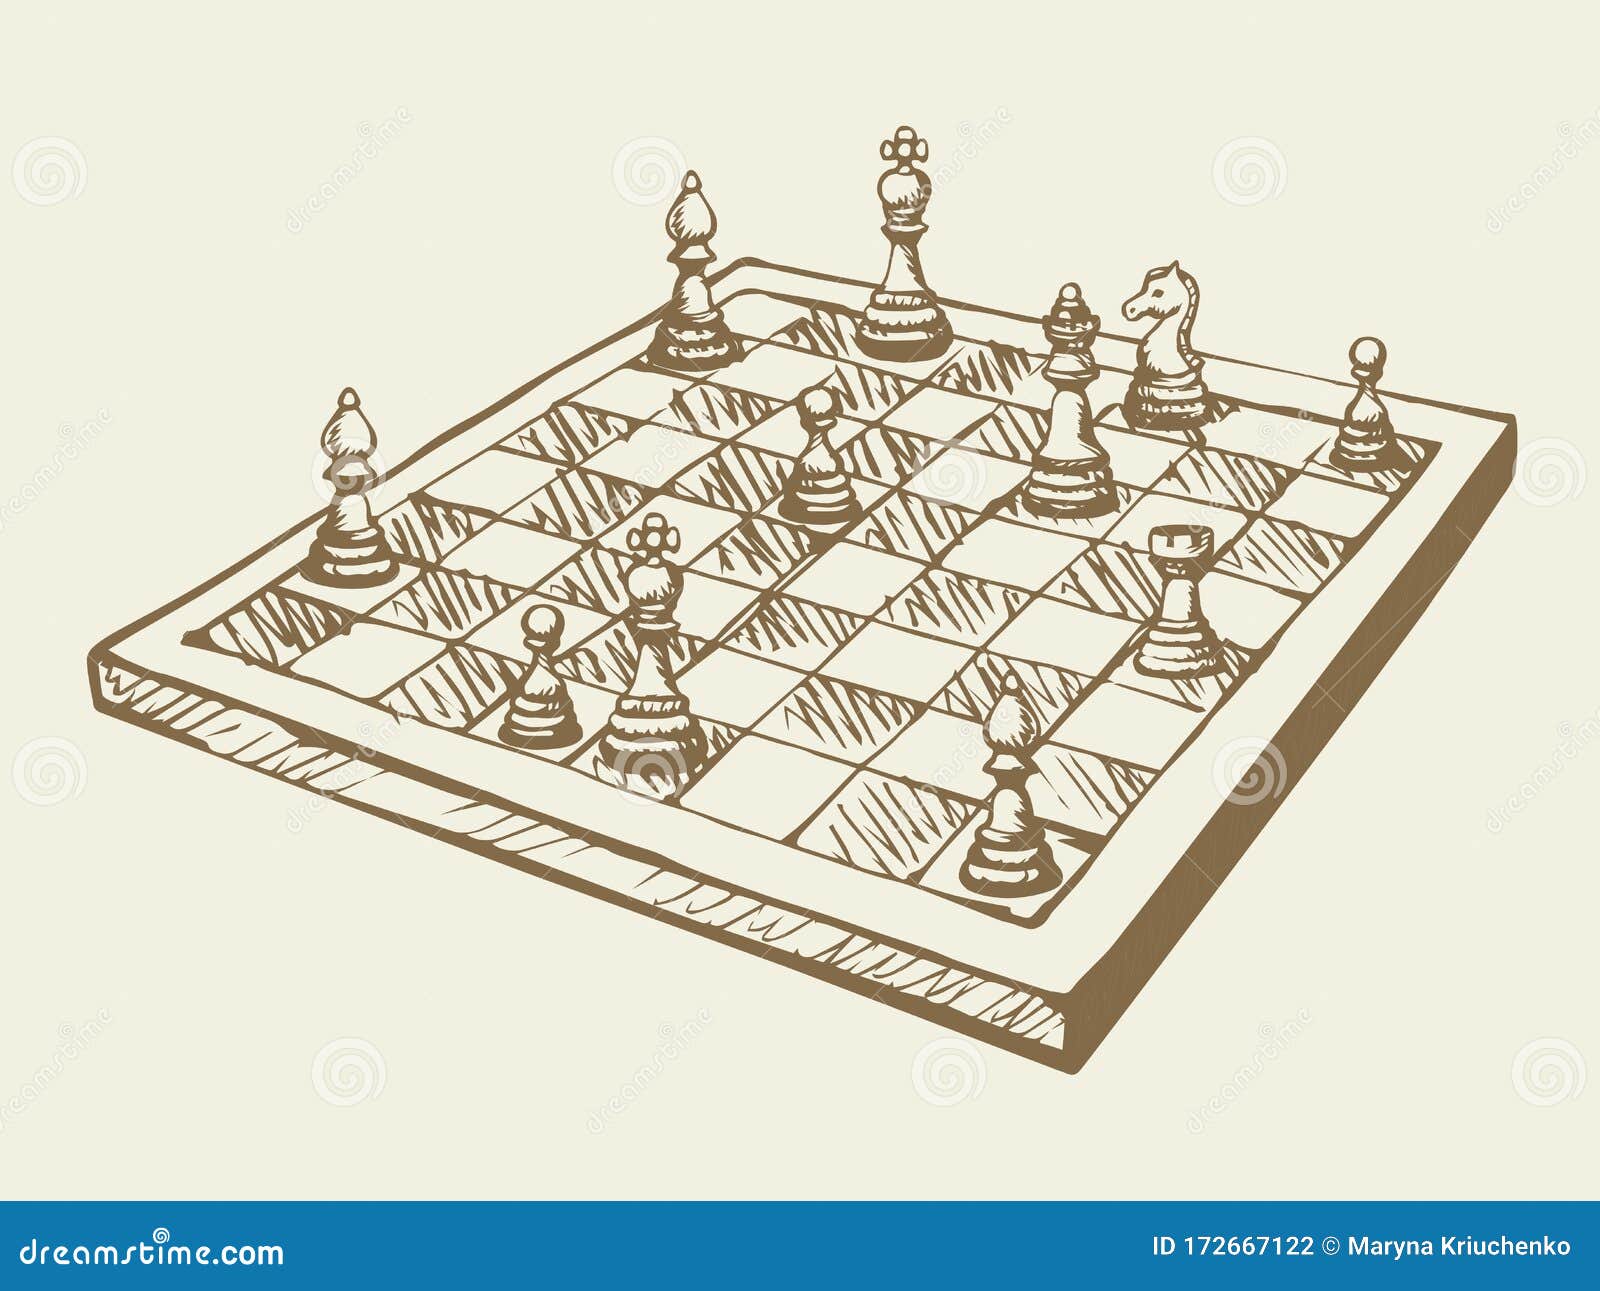 figuras de desenho de linha contínua única de xadrez de madeira no